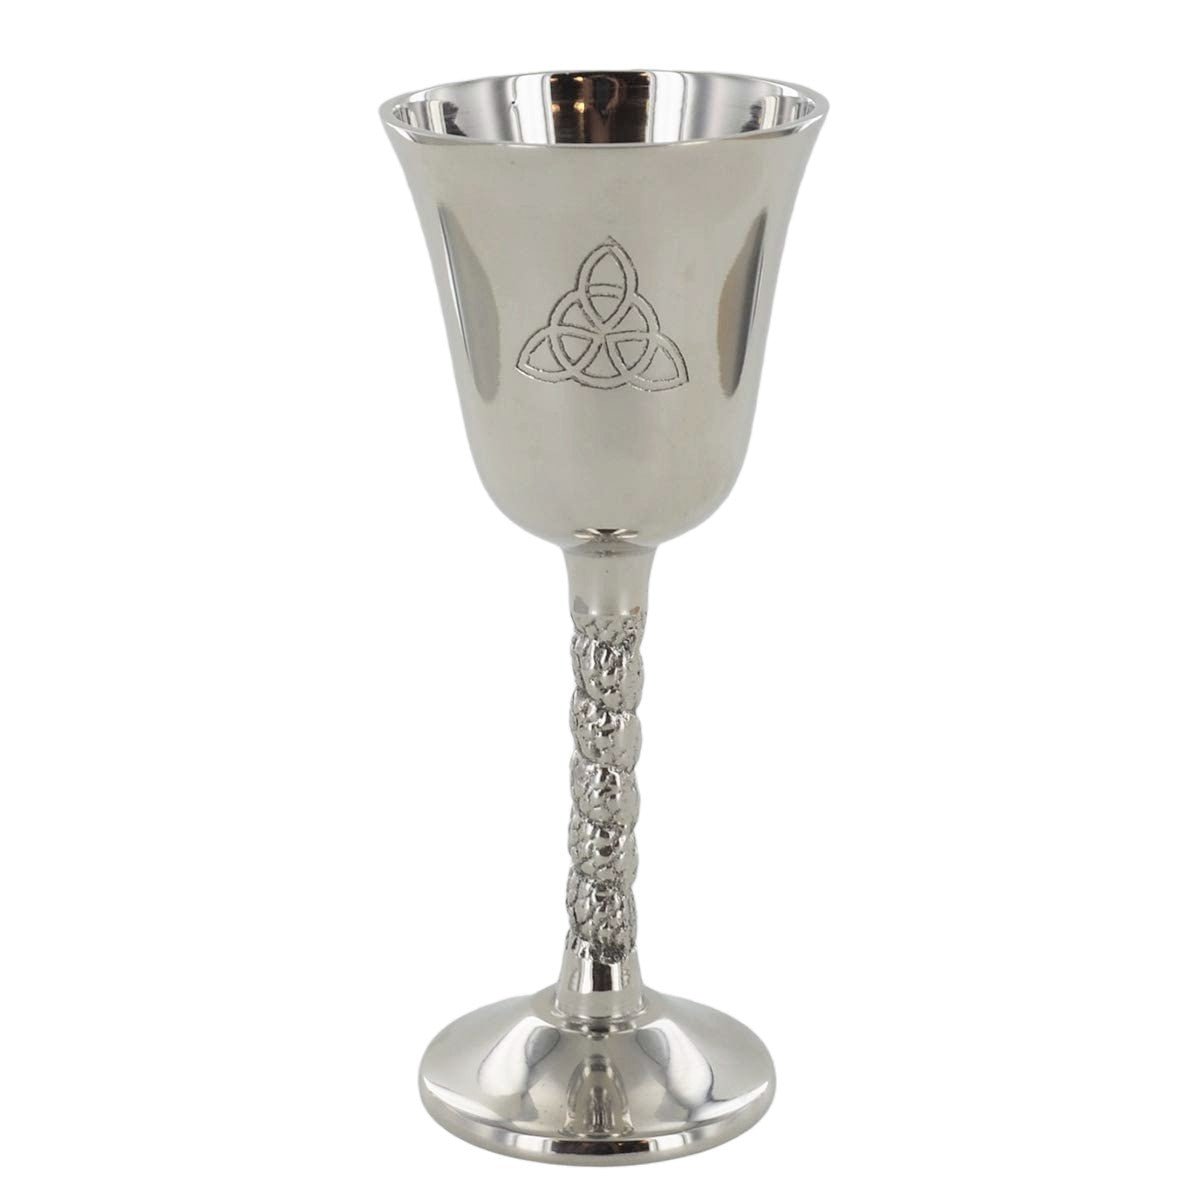 Nickel Goblet Cup Triquetra Symbol